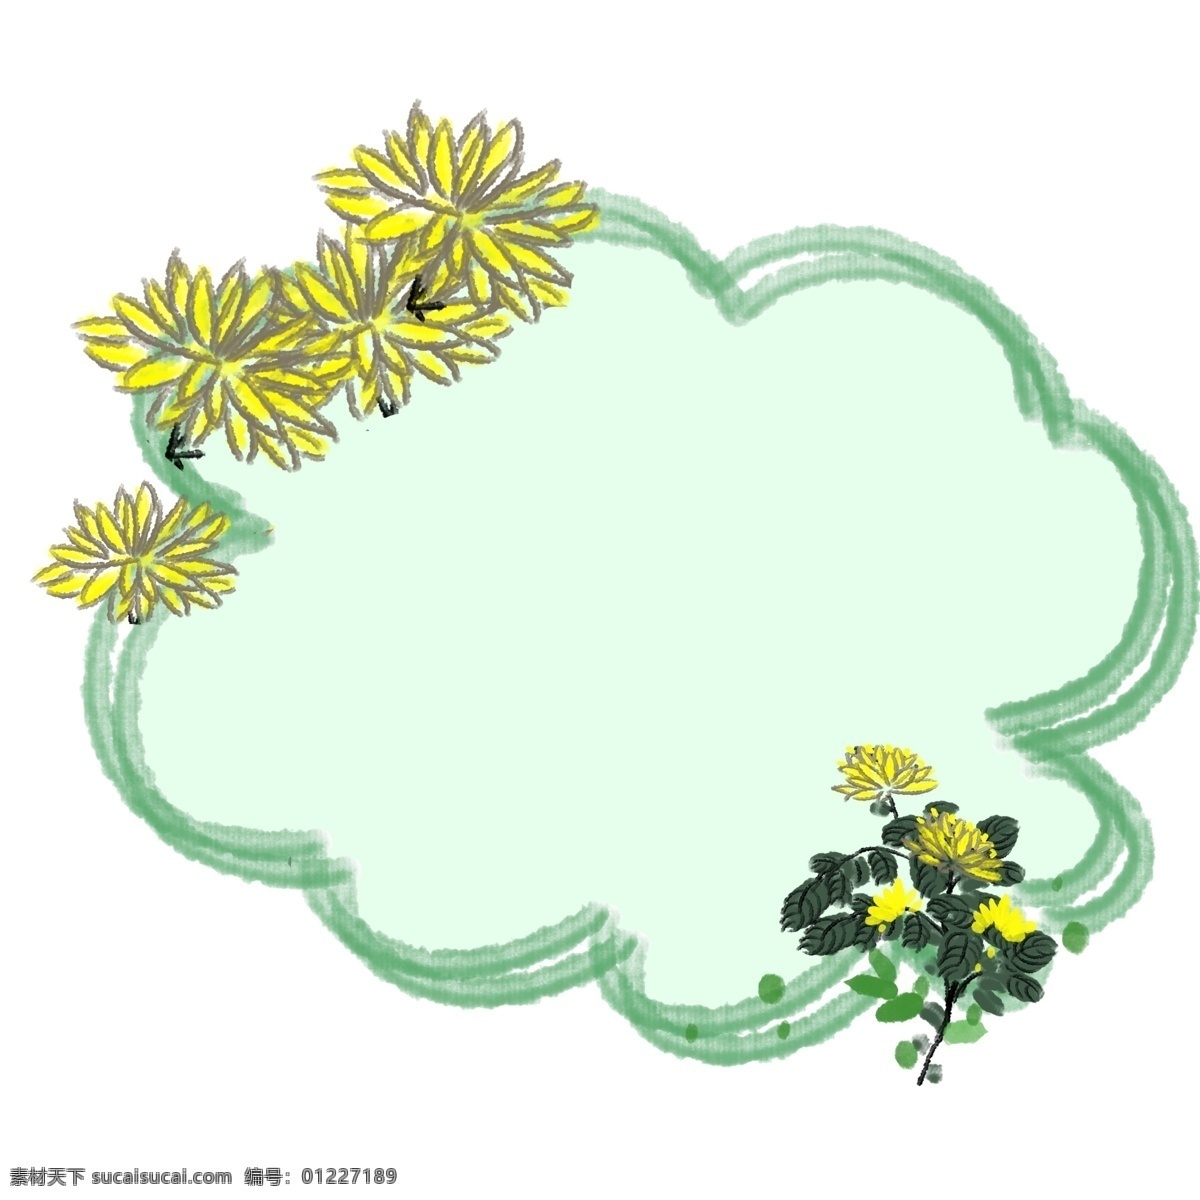 黄色 菊花 花卉 边框 黄色的菊花 卡通边框 花卉边框 鲜花边框 花朵边框 花环边框 雏菊的边框